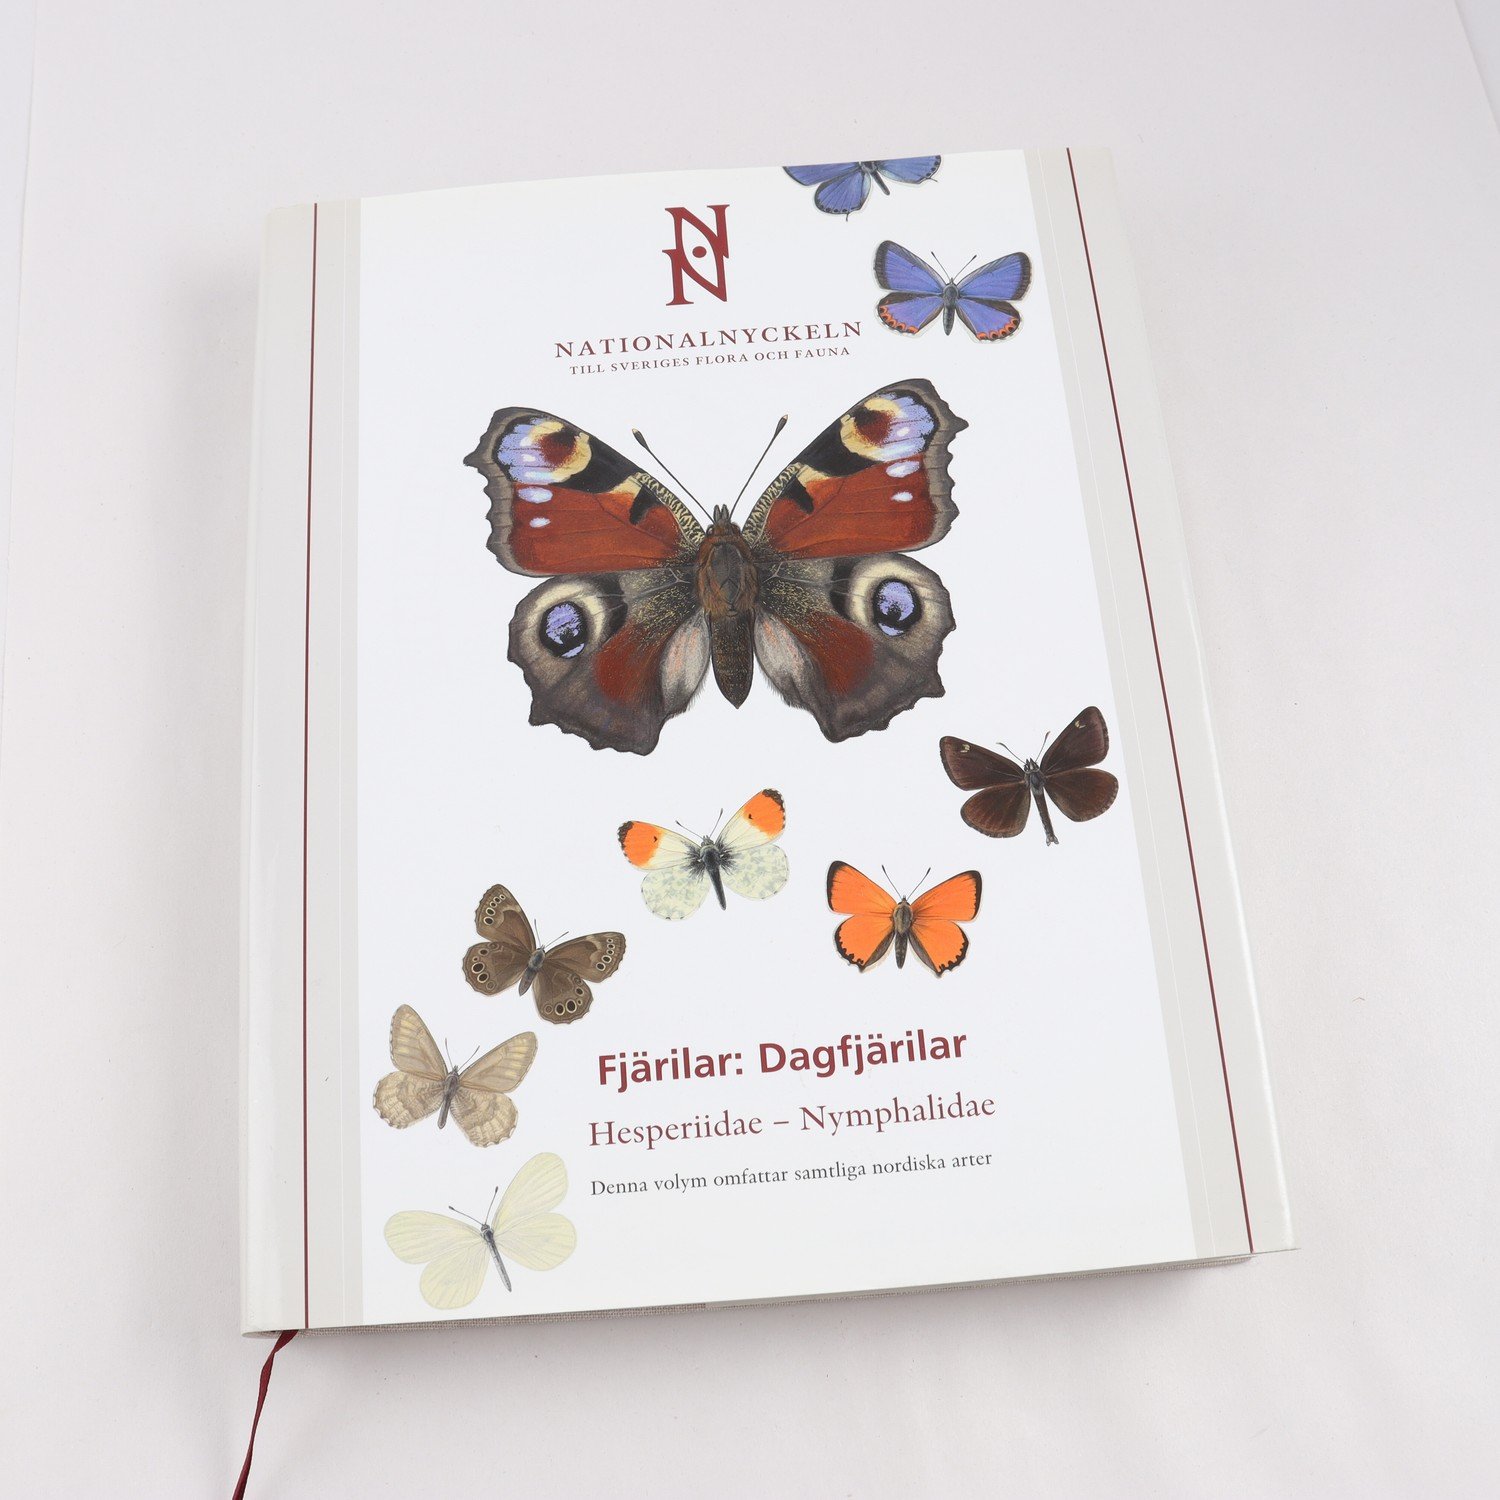 Nationalnyckeln, Fjärilar: Dagfjärilar